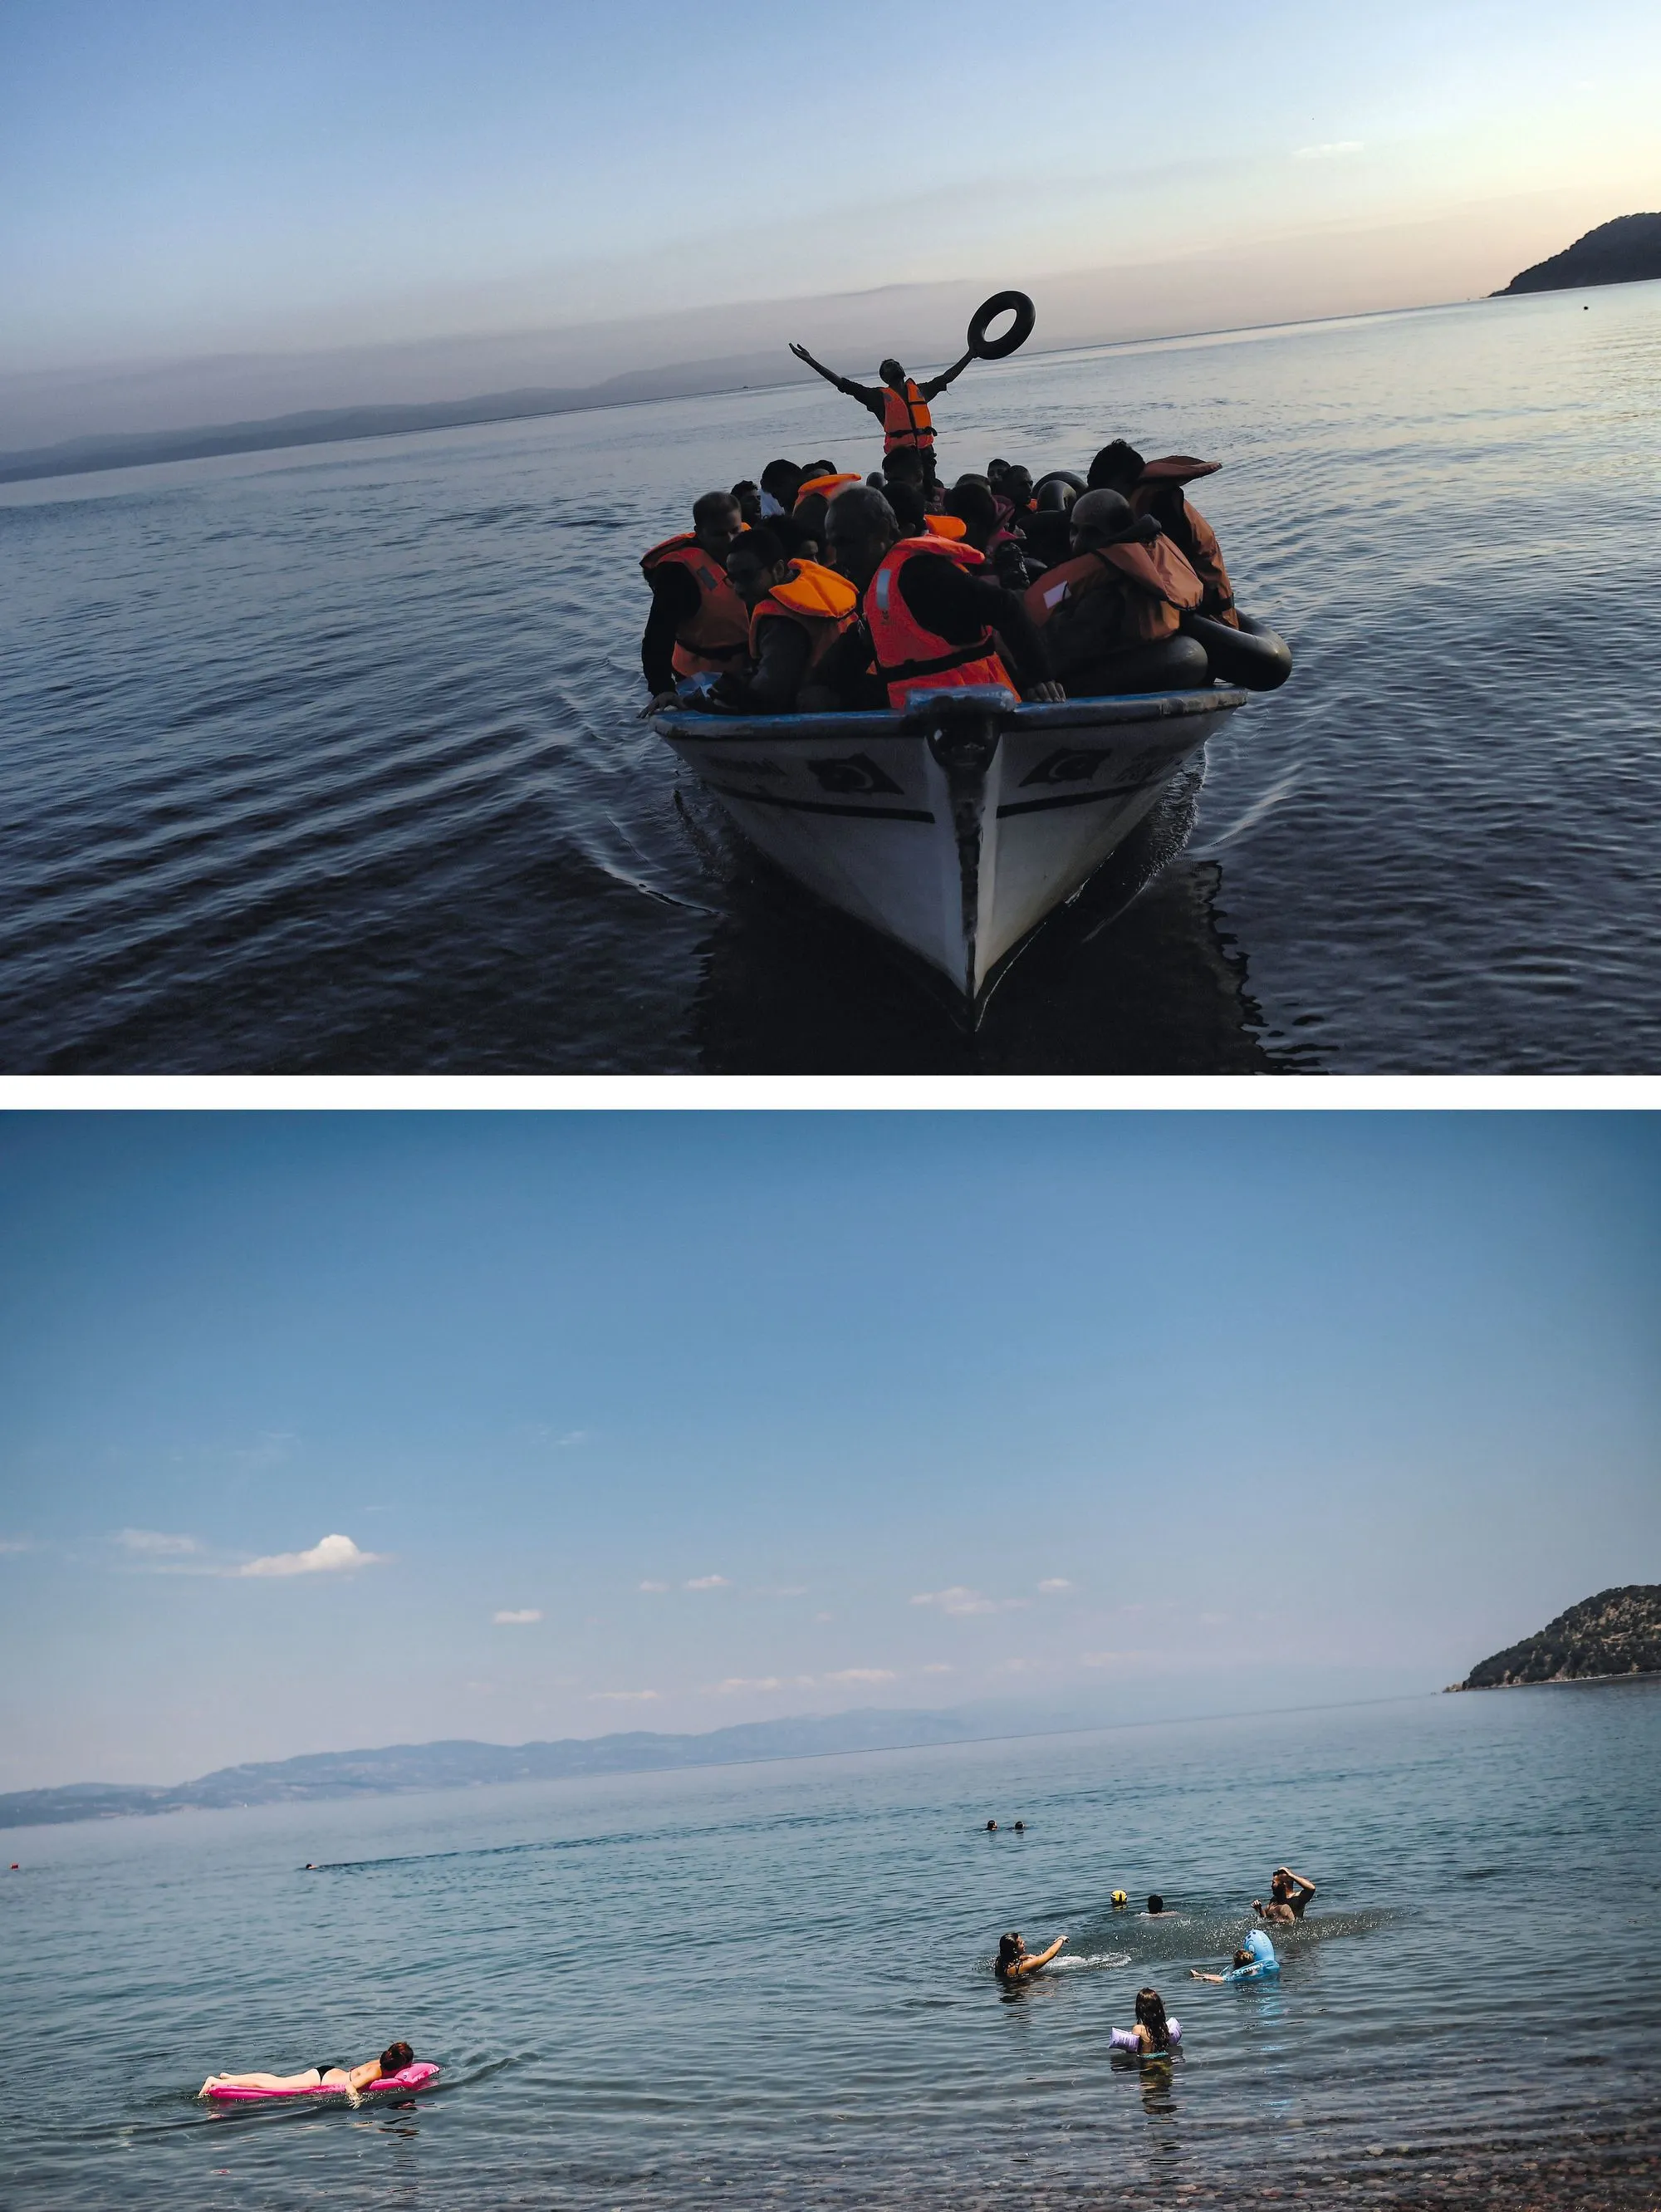 L'île grecque de Lesbos en 2015 (haut) et 2018 (bas)